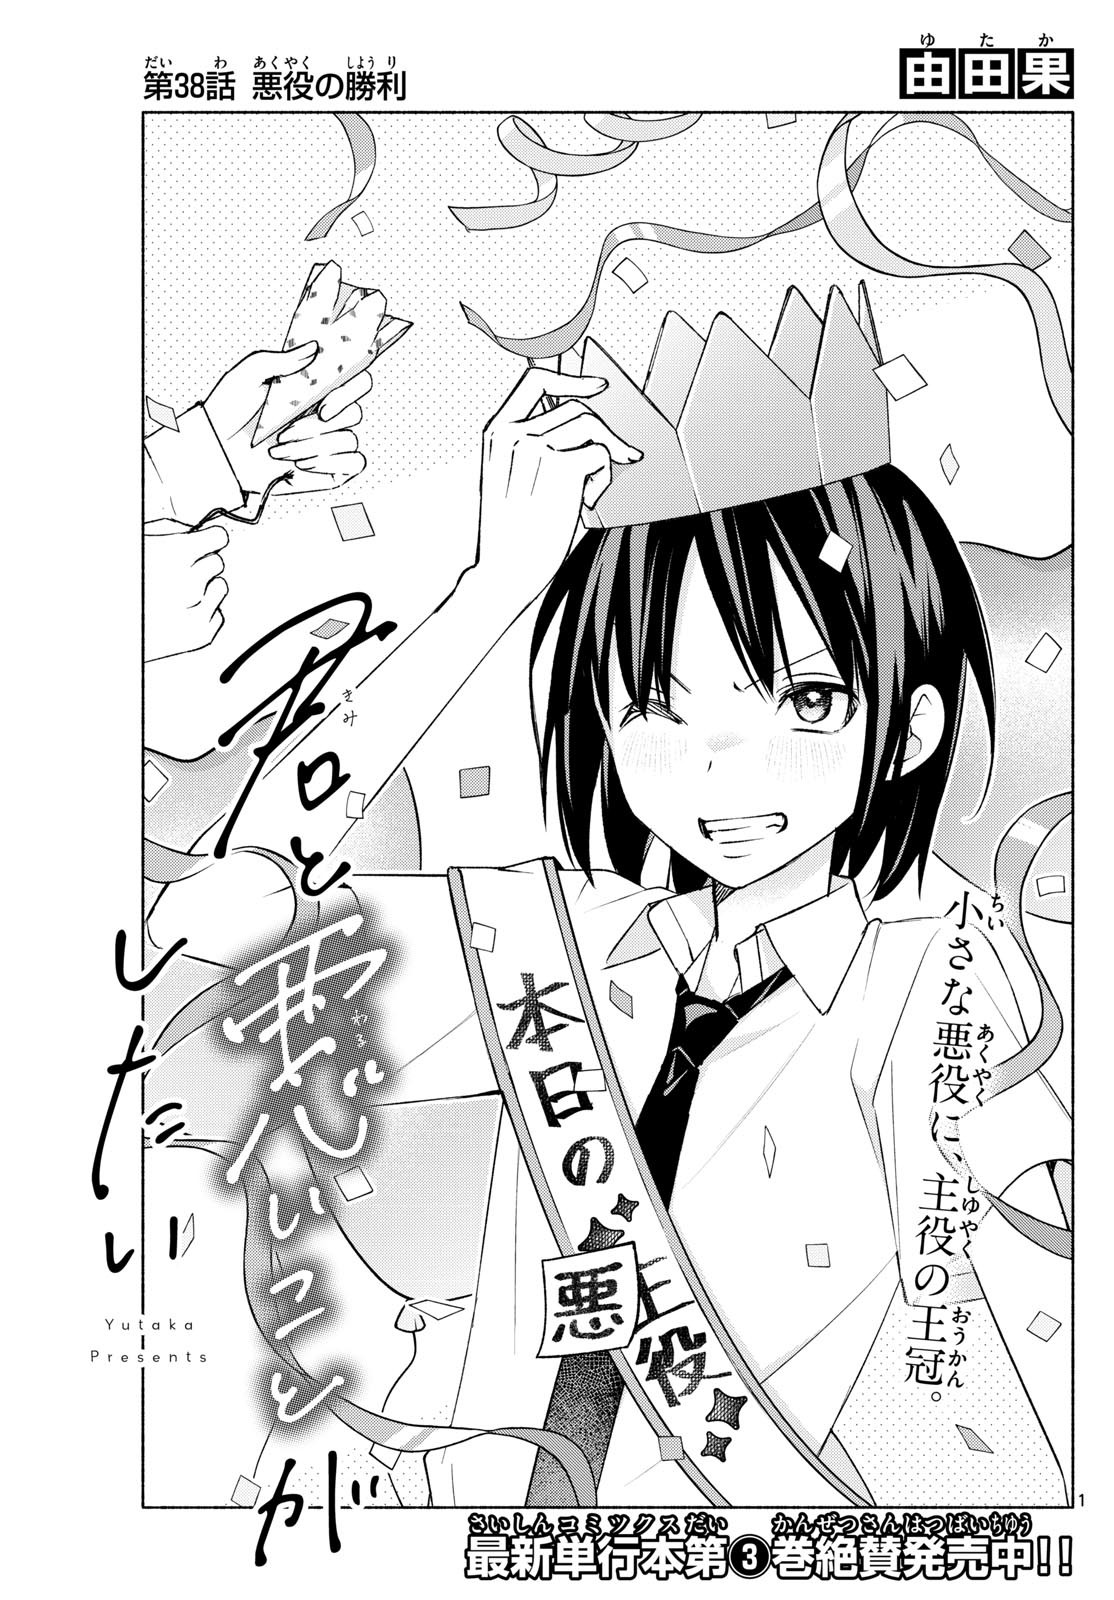 Kimi to Warui Koto ga Shitai - Chapter 038 - Page 1